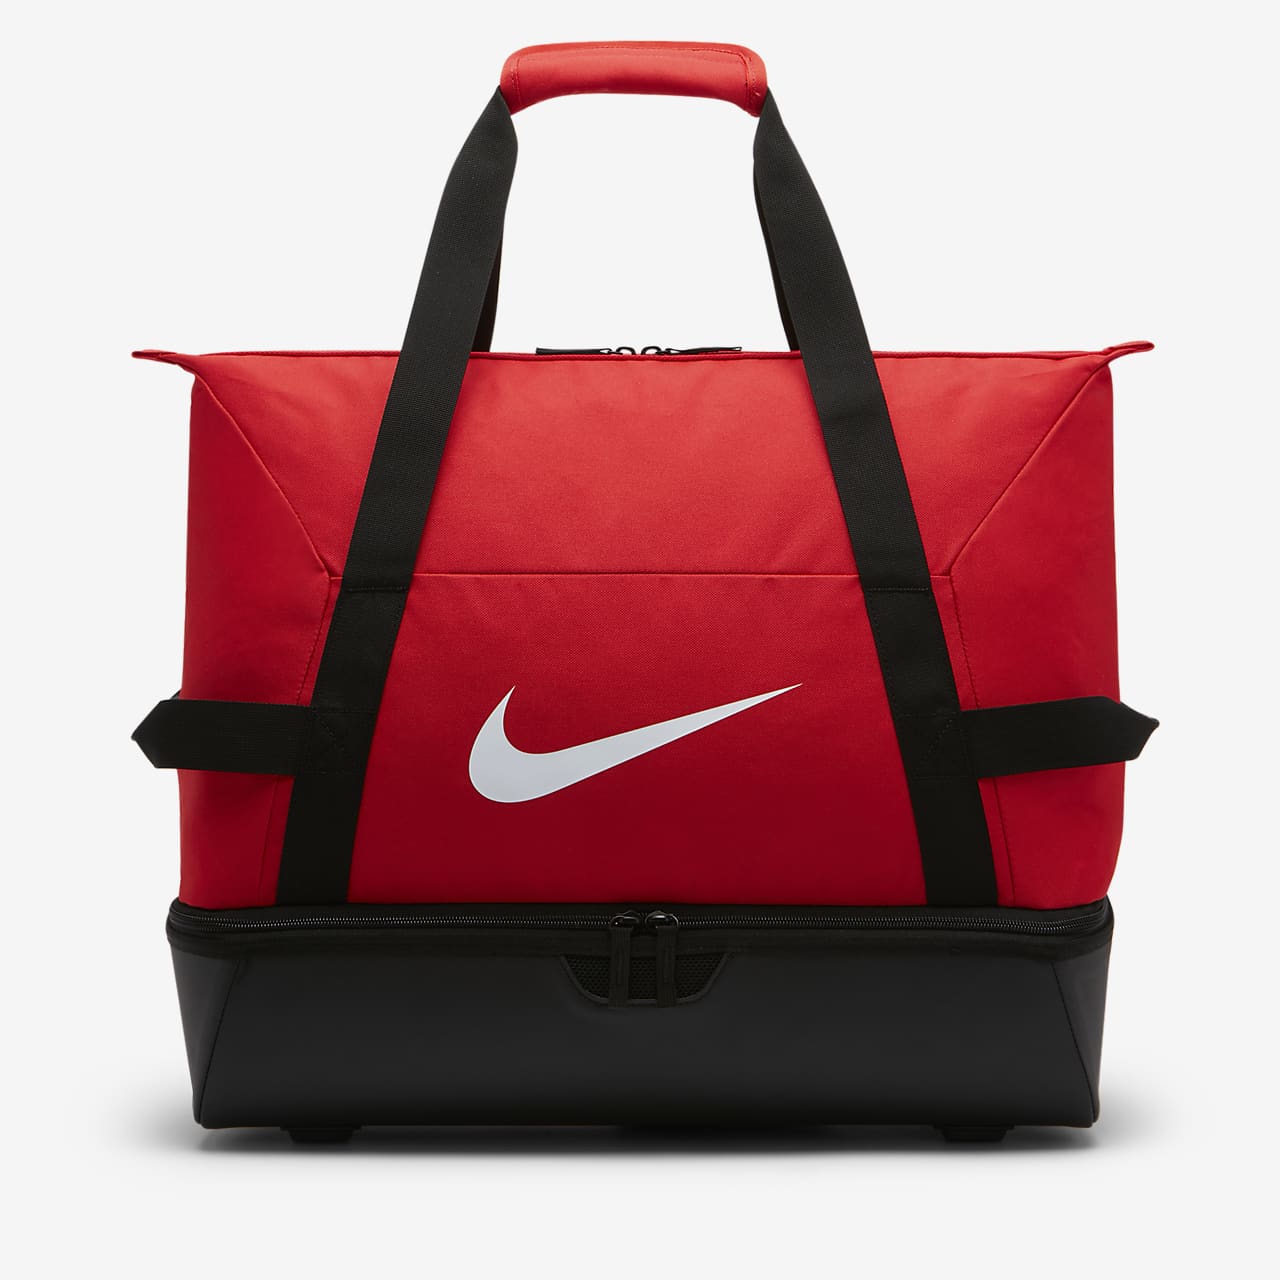 Τσάντα γυμναστηρίου για ποδόσφαιρο Nike Academy Team Hardcase (μέγεθος Large)